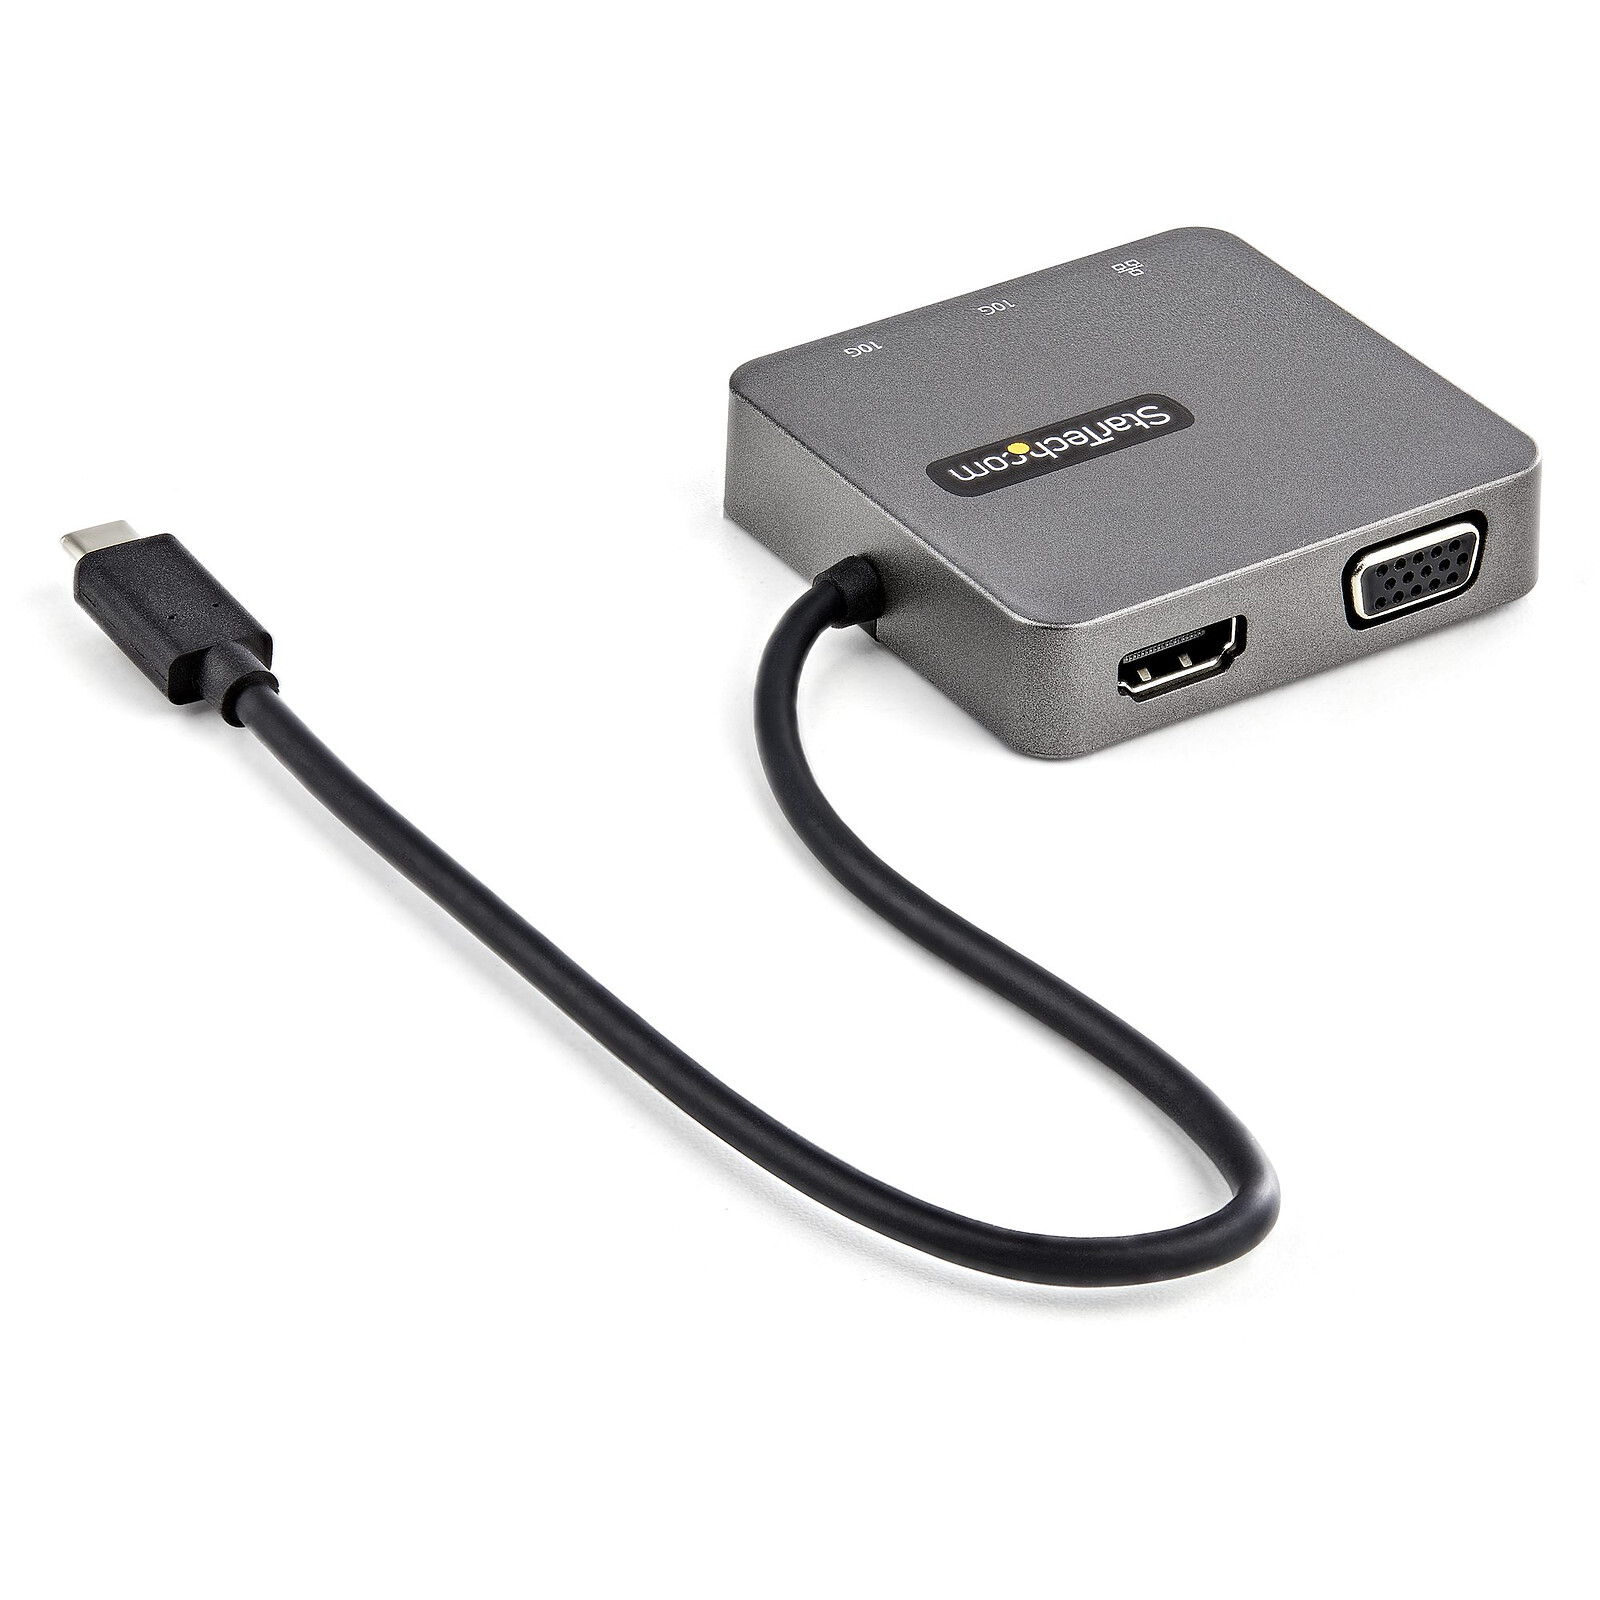 Adaptateur USB 3.0 universel de Lenovo à VGA/HDMI